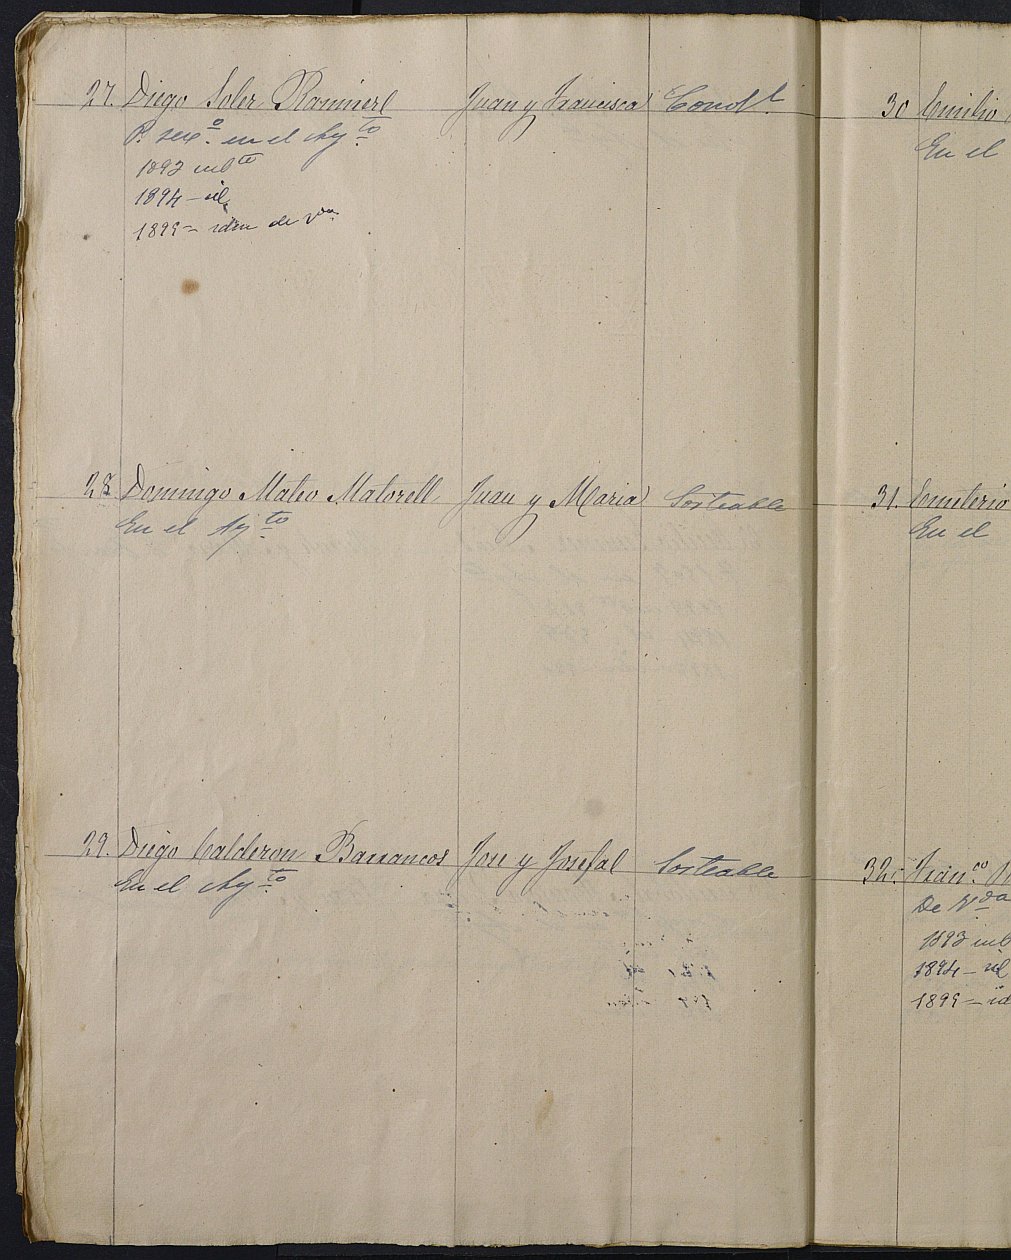 Relación de individuos declarados soldados e ingresados en Caja de la Sección 3º del Ayuntamiento de Cartagena de 1892.